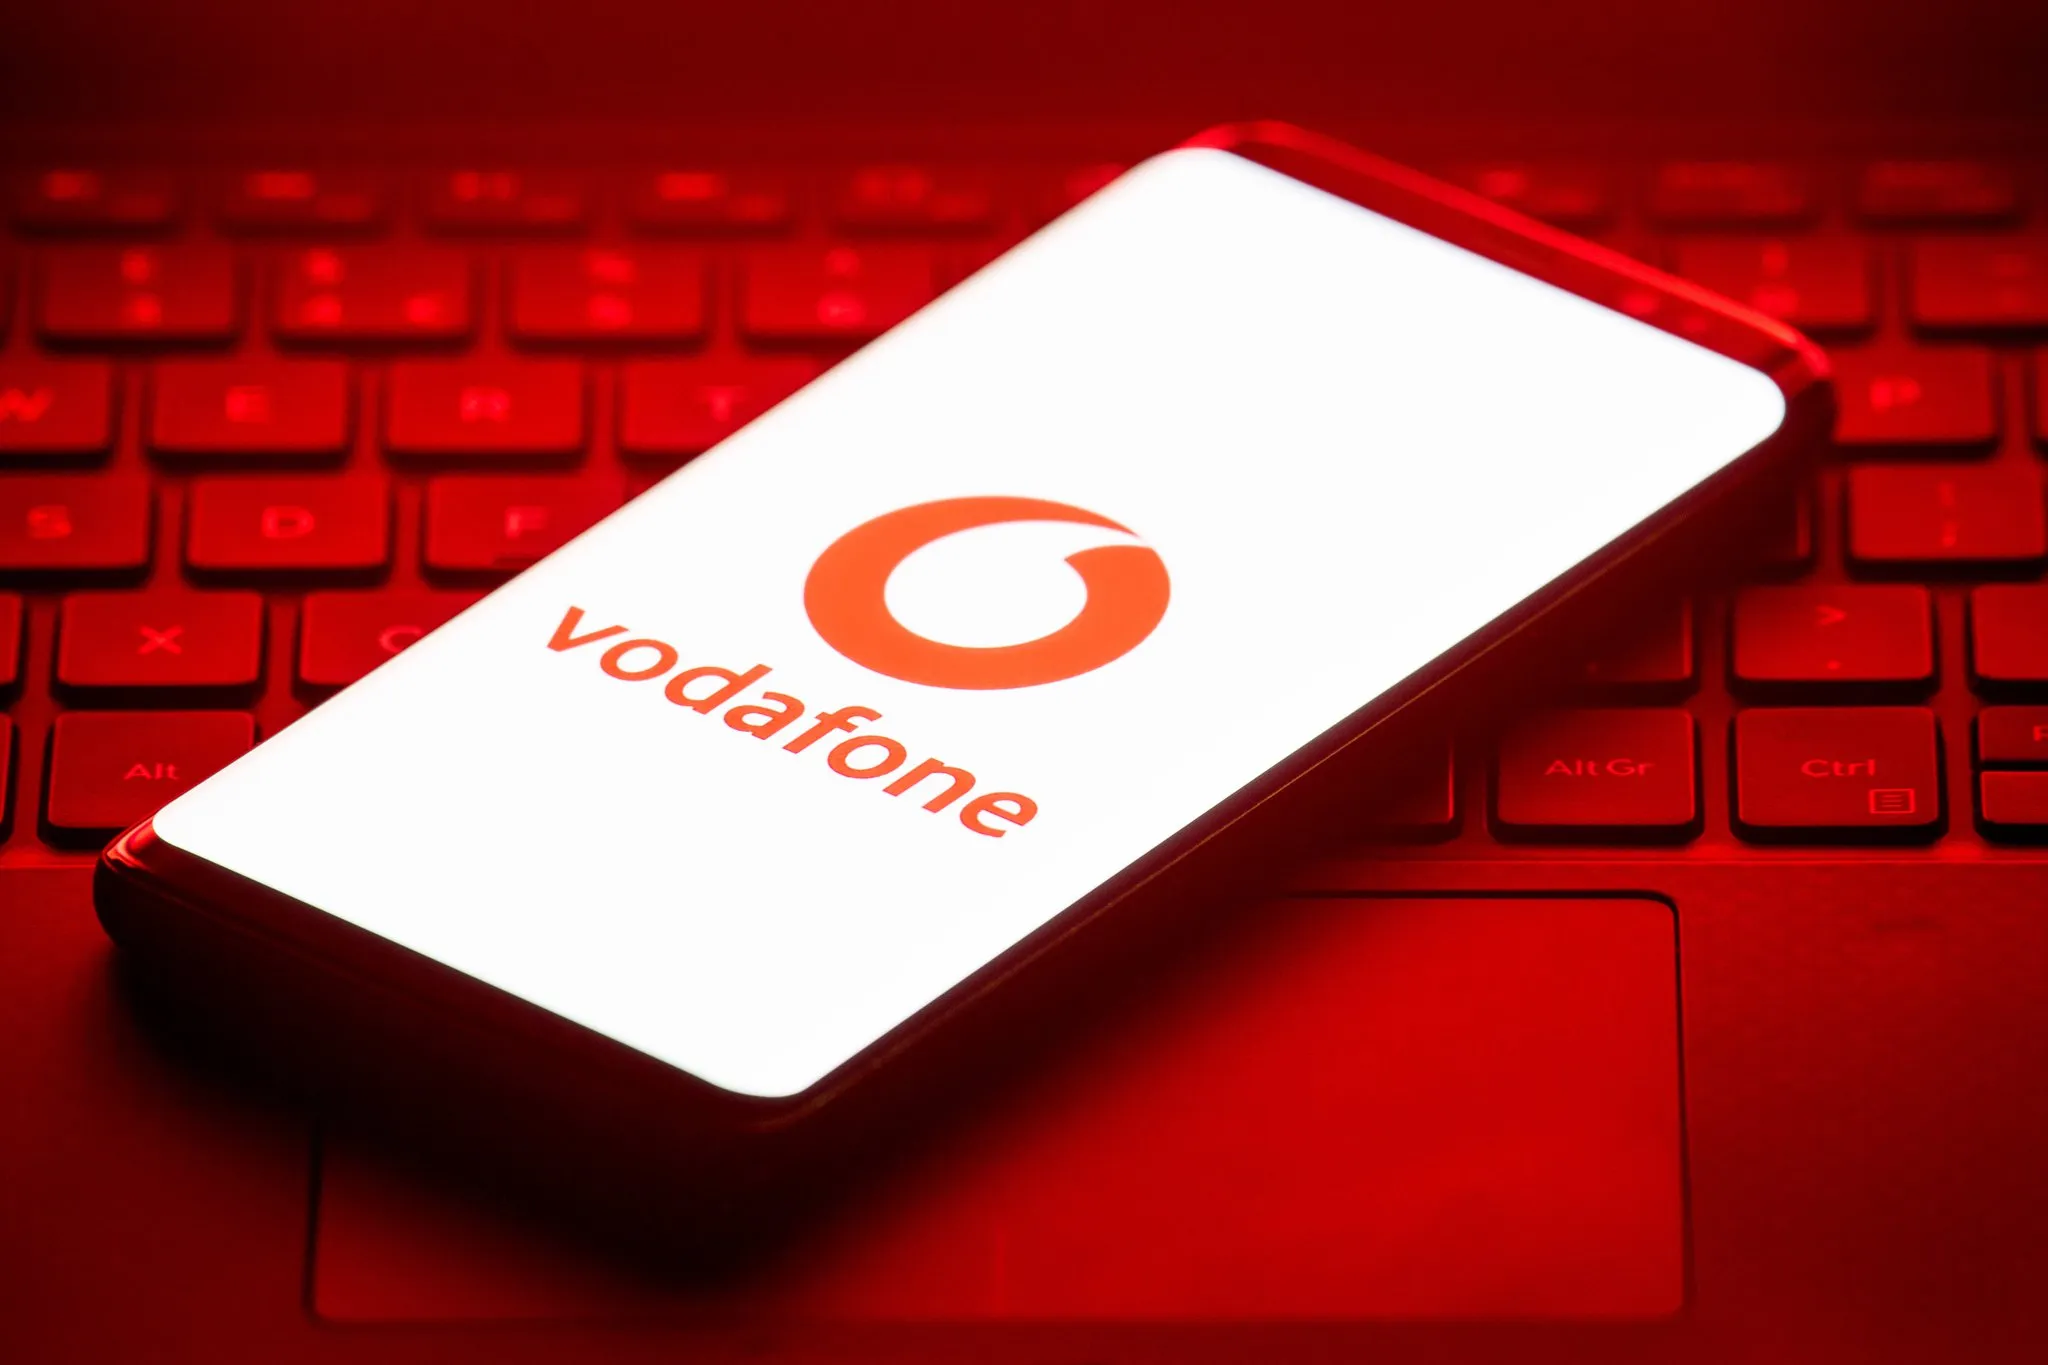 Компанія Vodafone шокувала абонентів новими тарифами: вони знову зросли